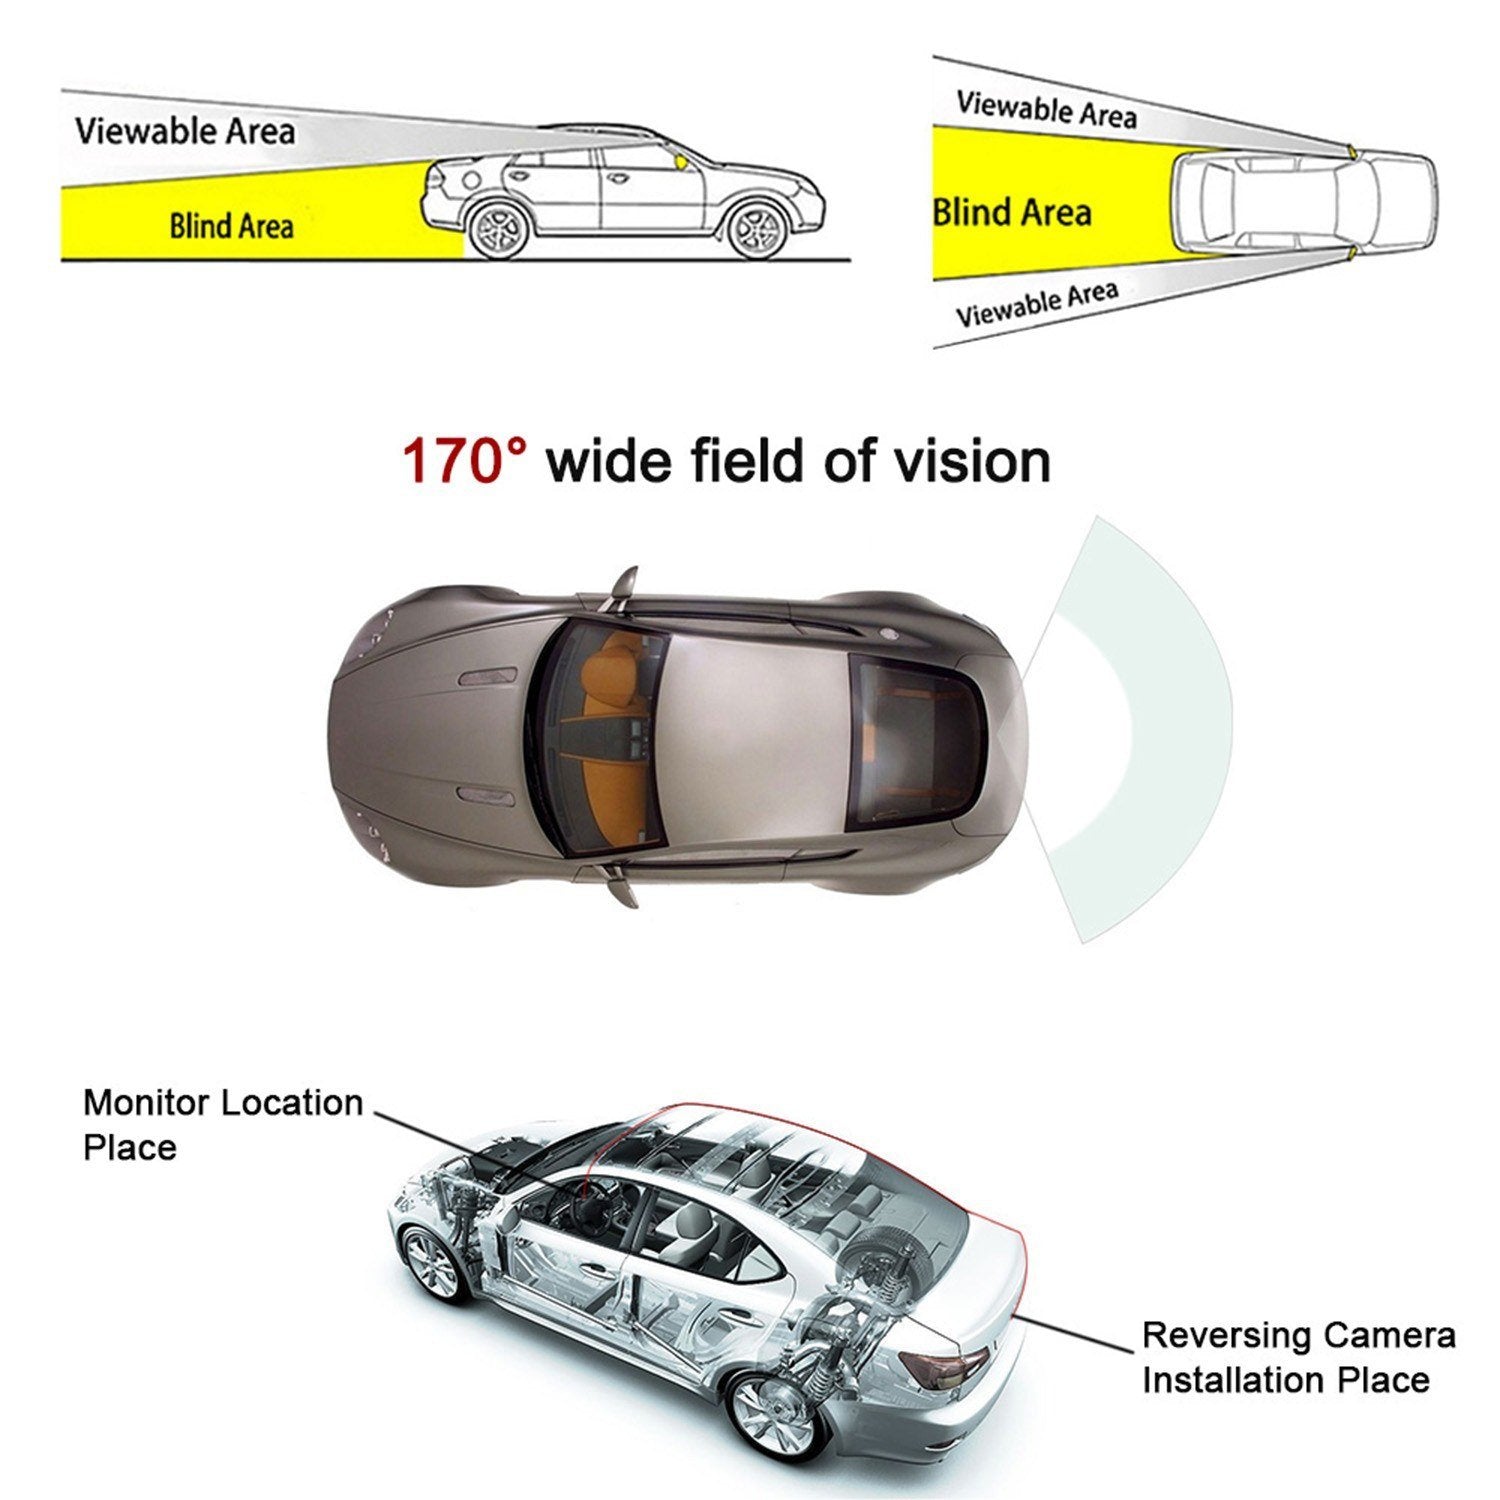 4.3'' TFT LCD Monitor Car Vehicle Backup Camera Parking System Rear View Night Vision